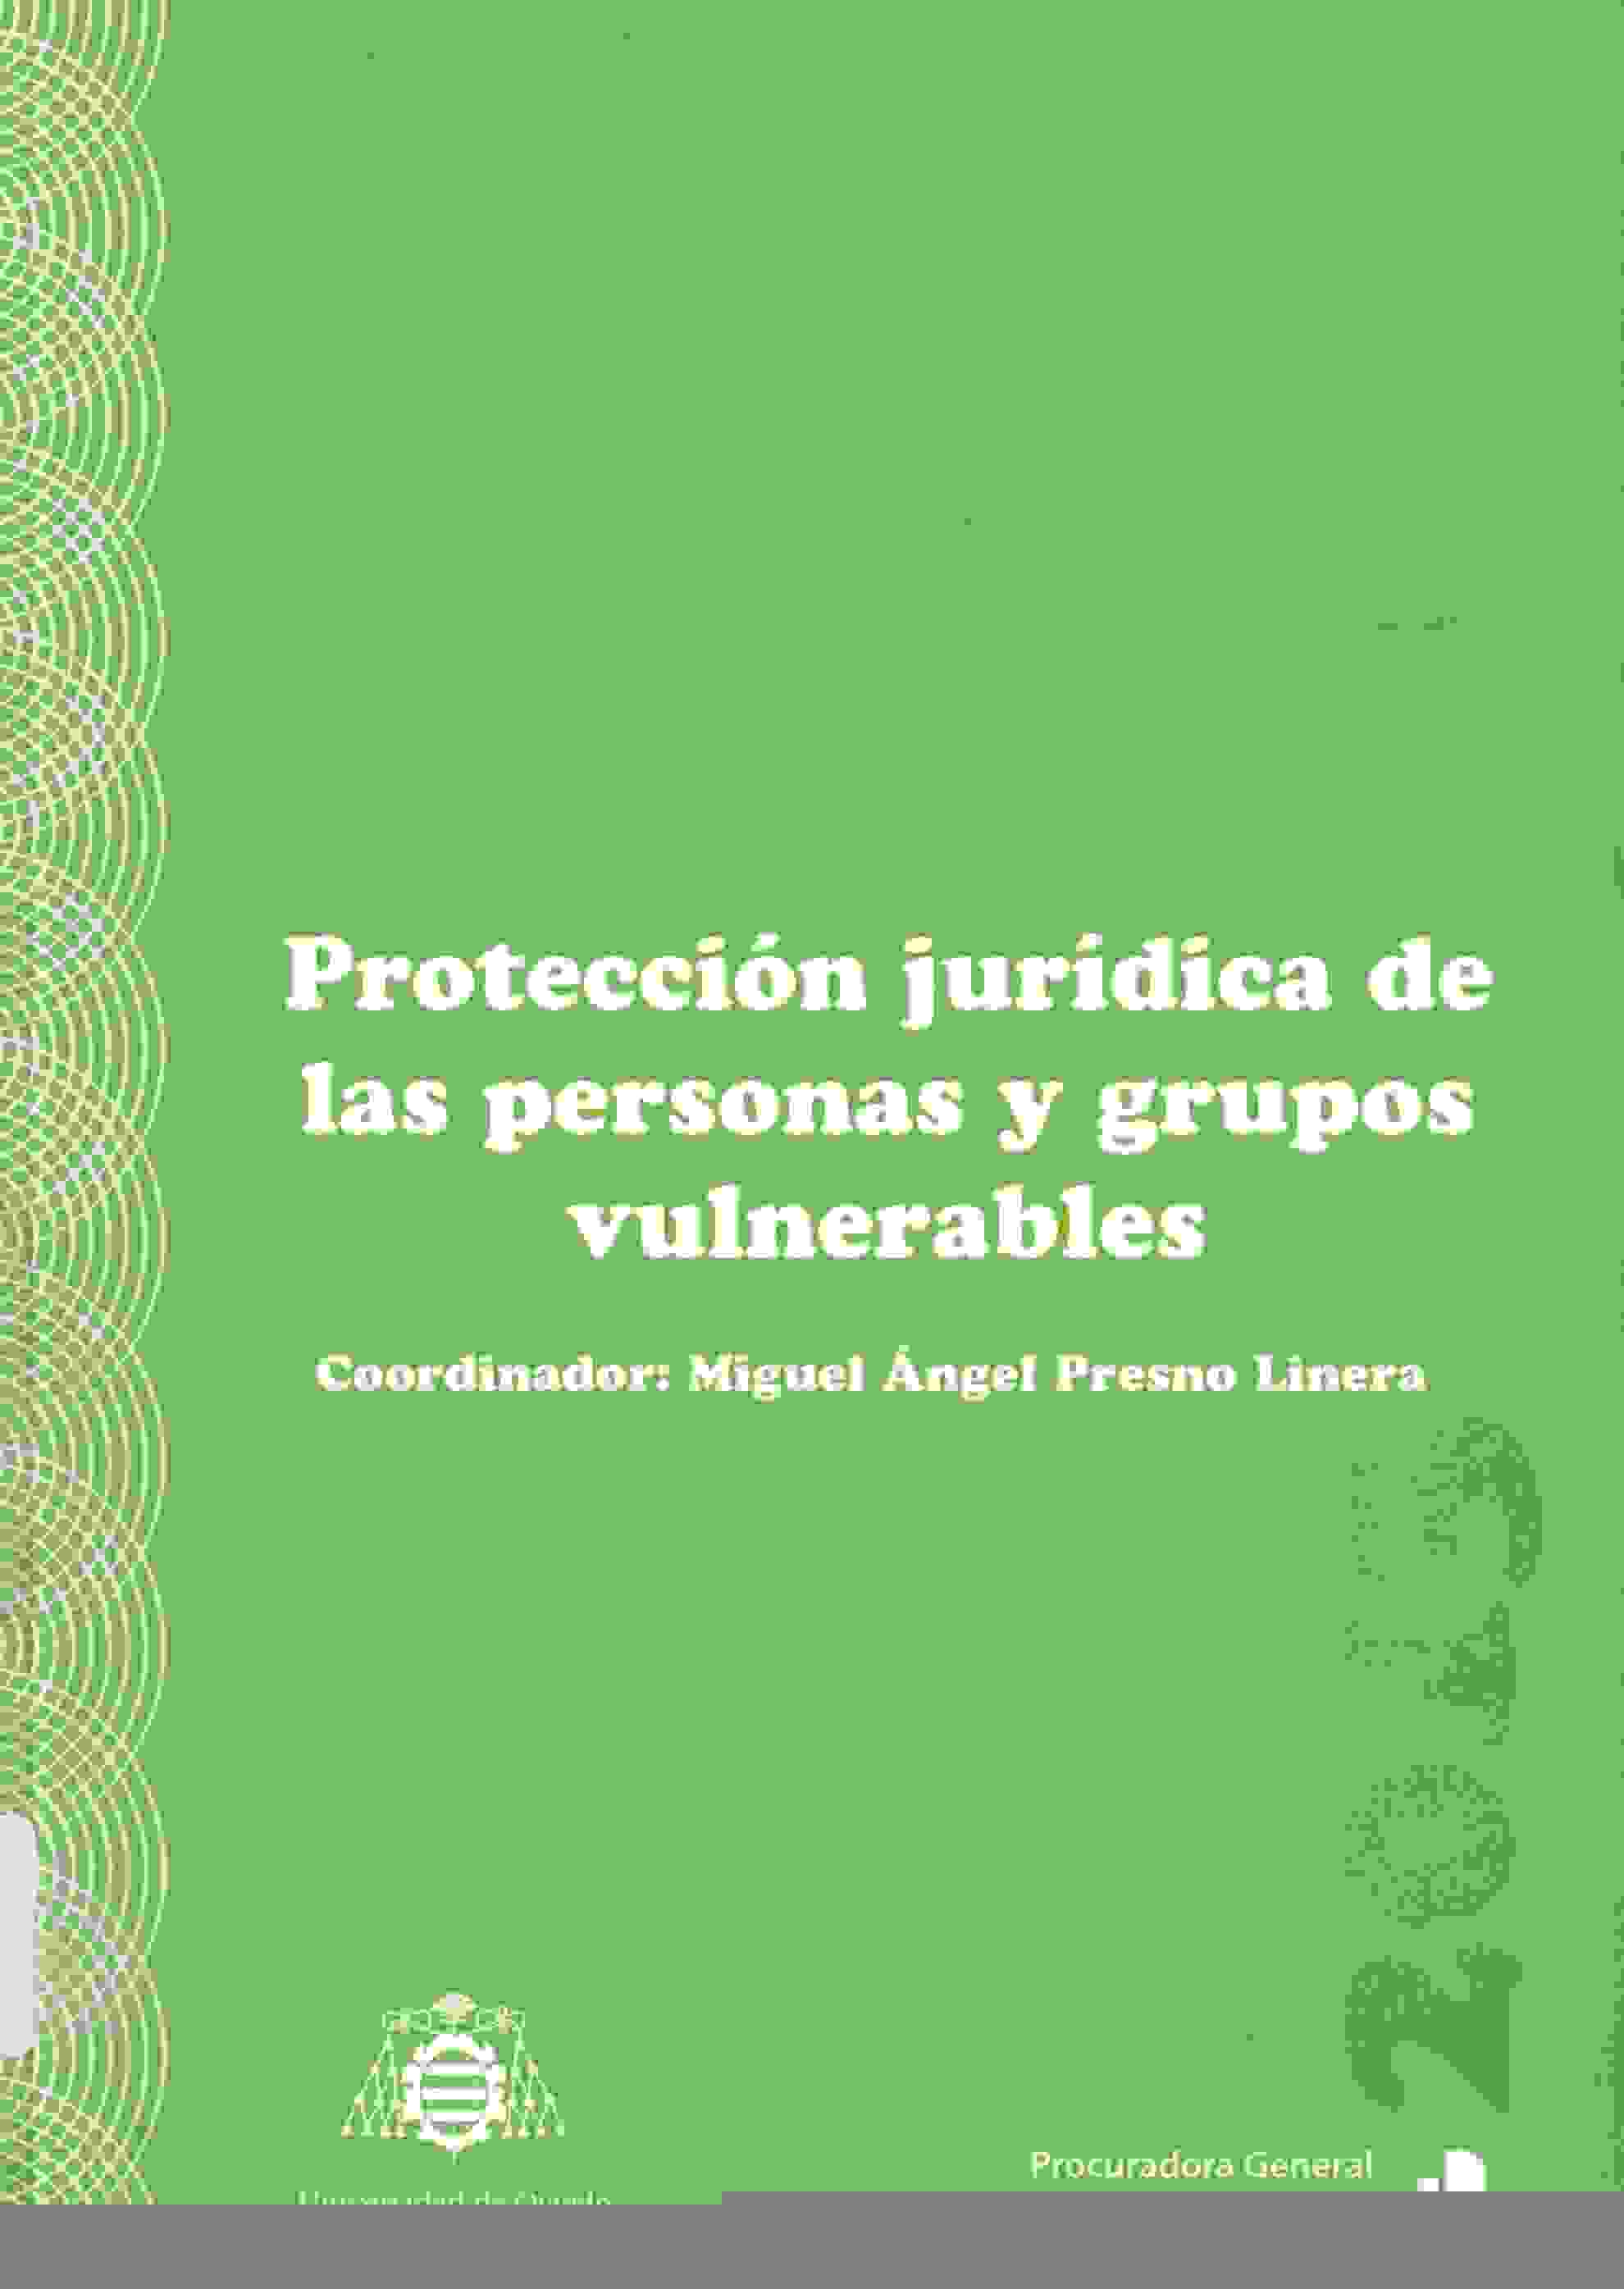 Imagen de portada del libro Protección jurídica de las personas y grupos vulnerables